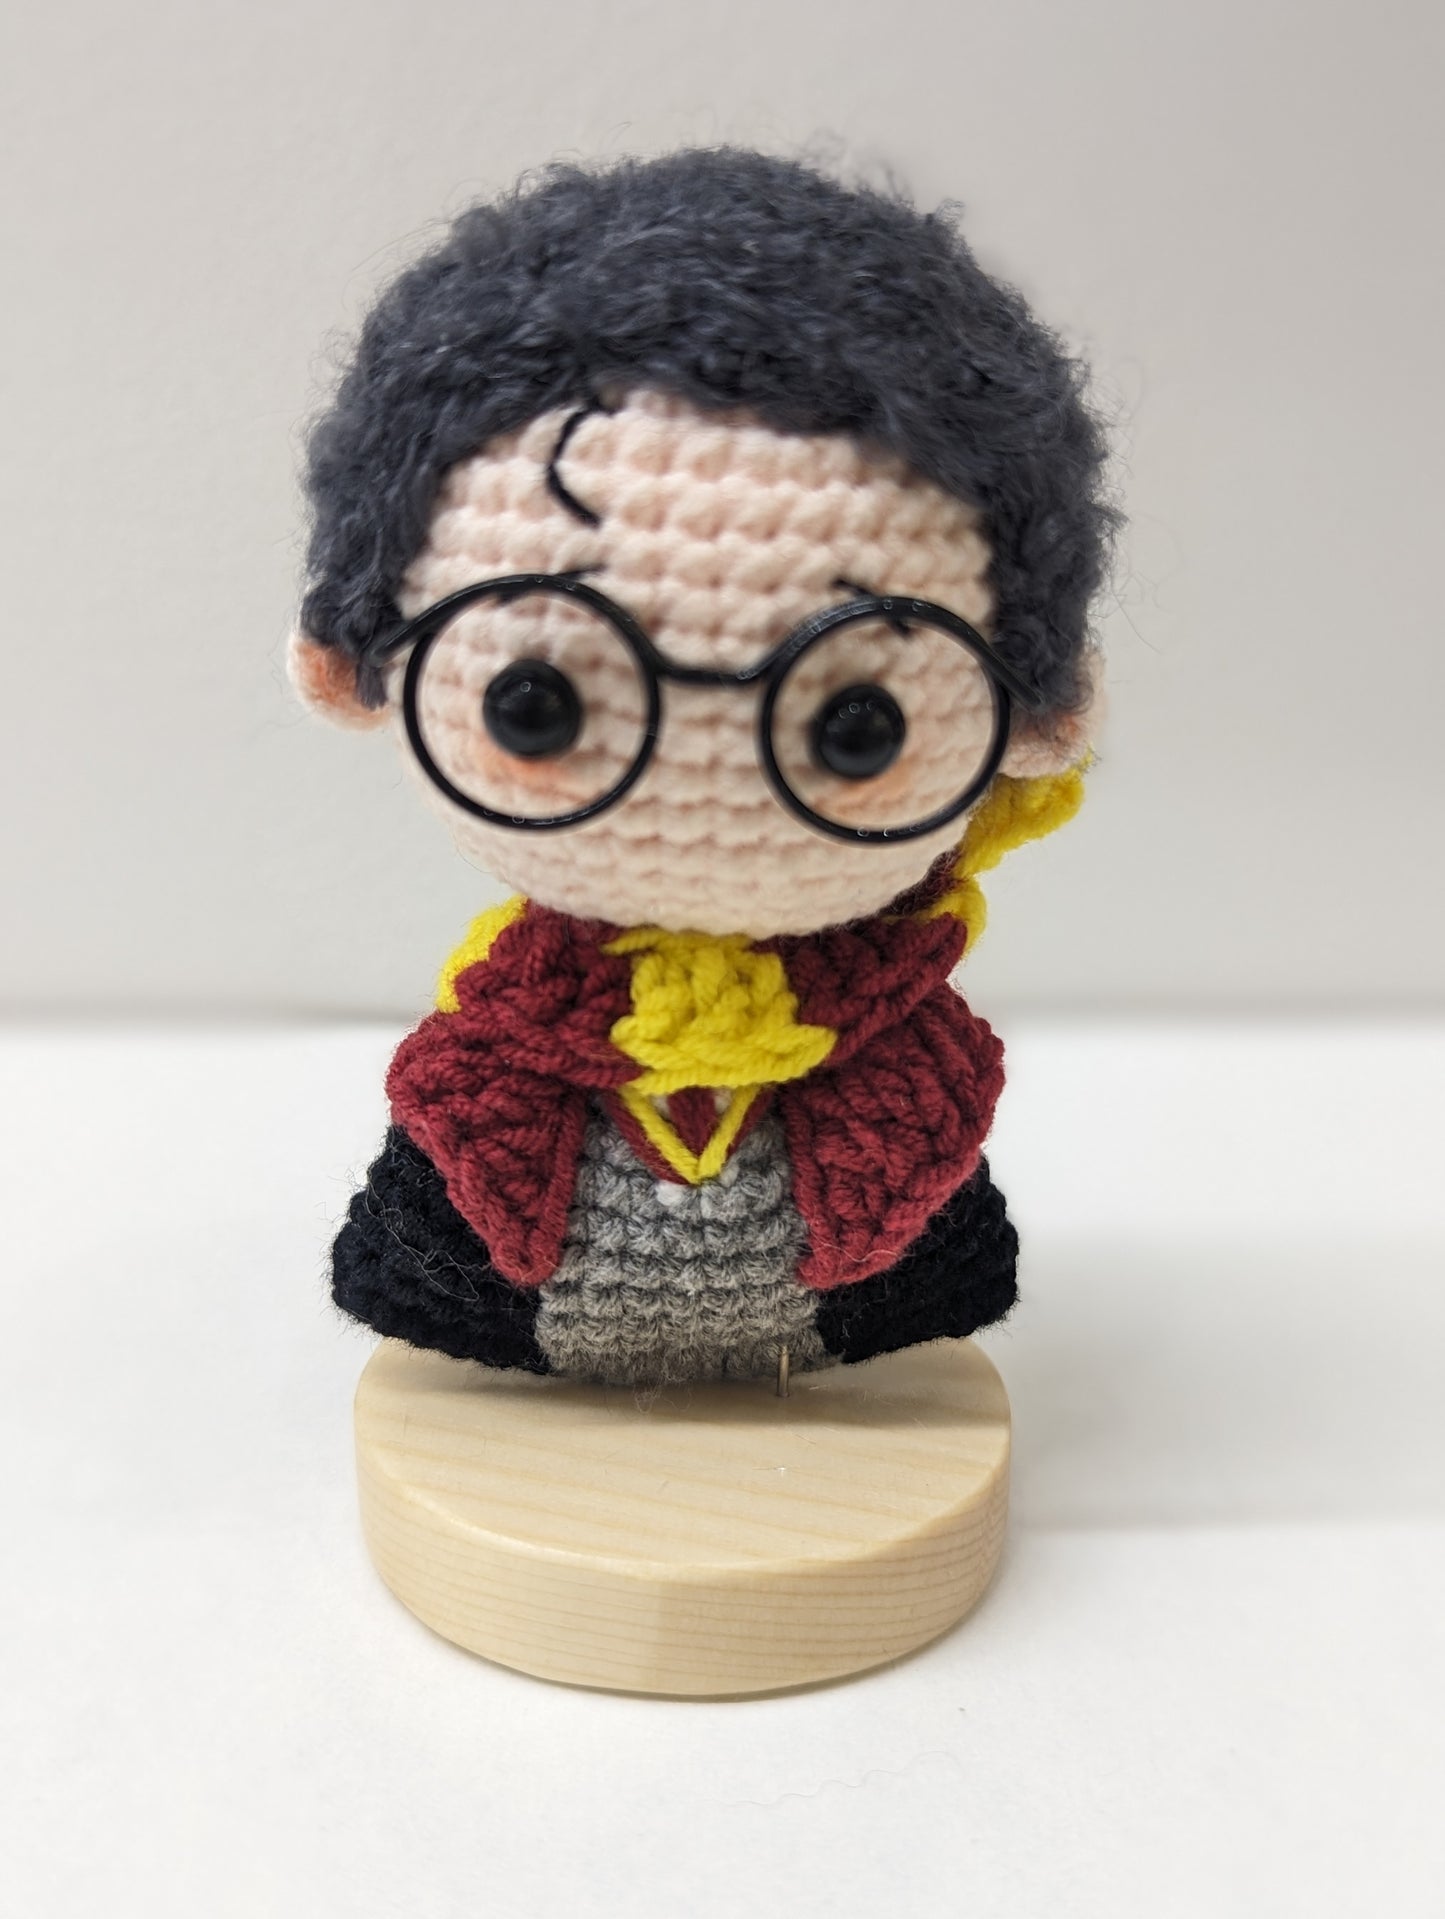 Harry Potter Crochet Handmade Figures